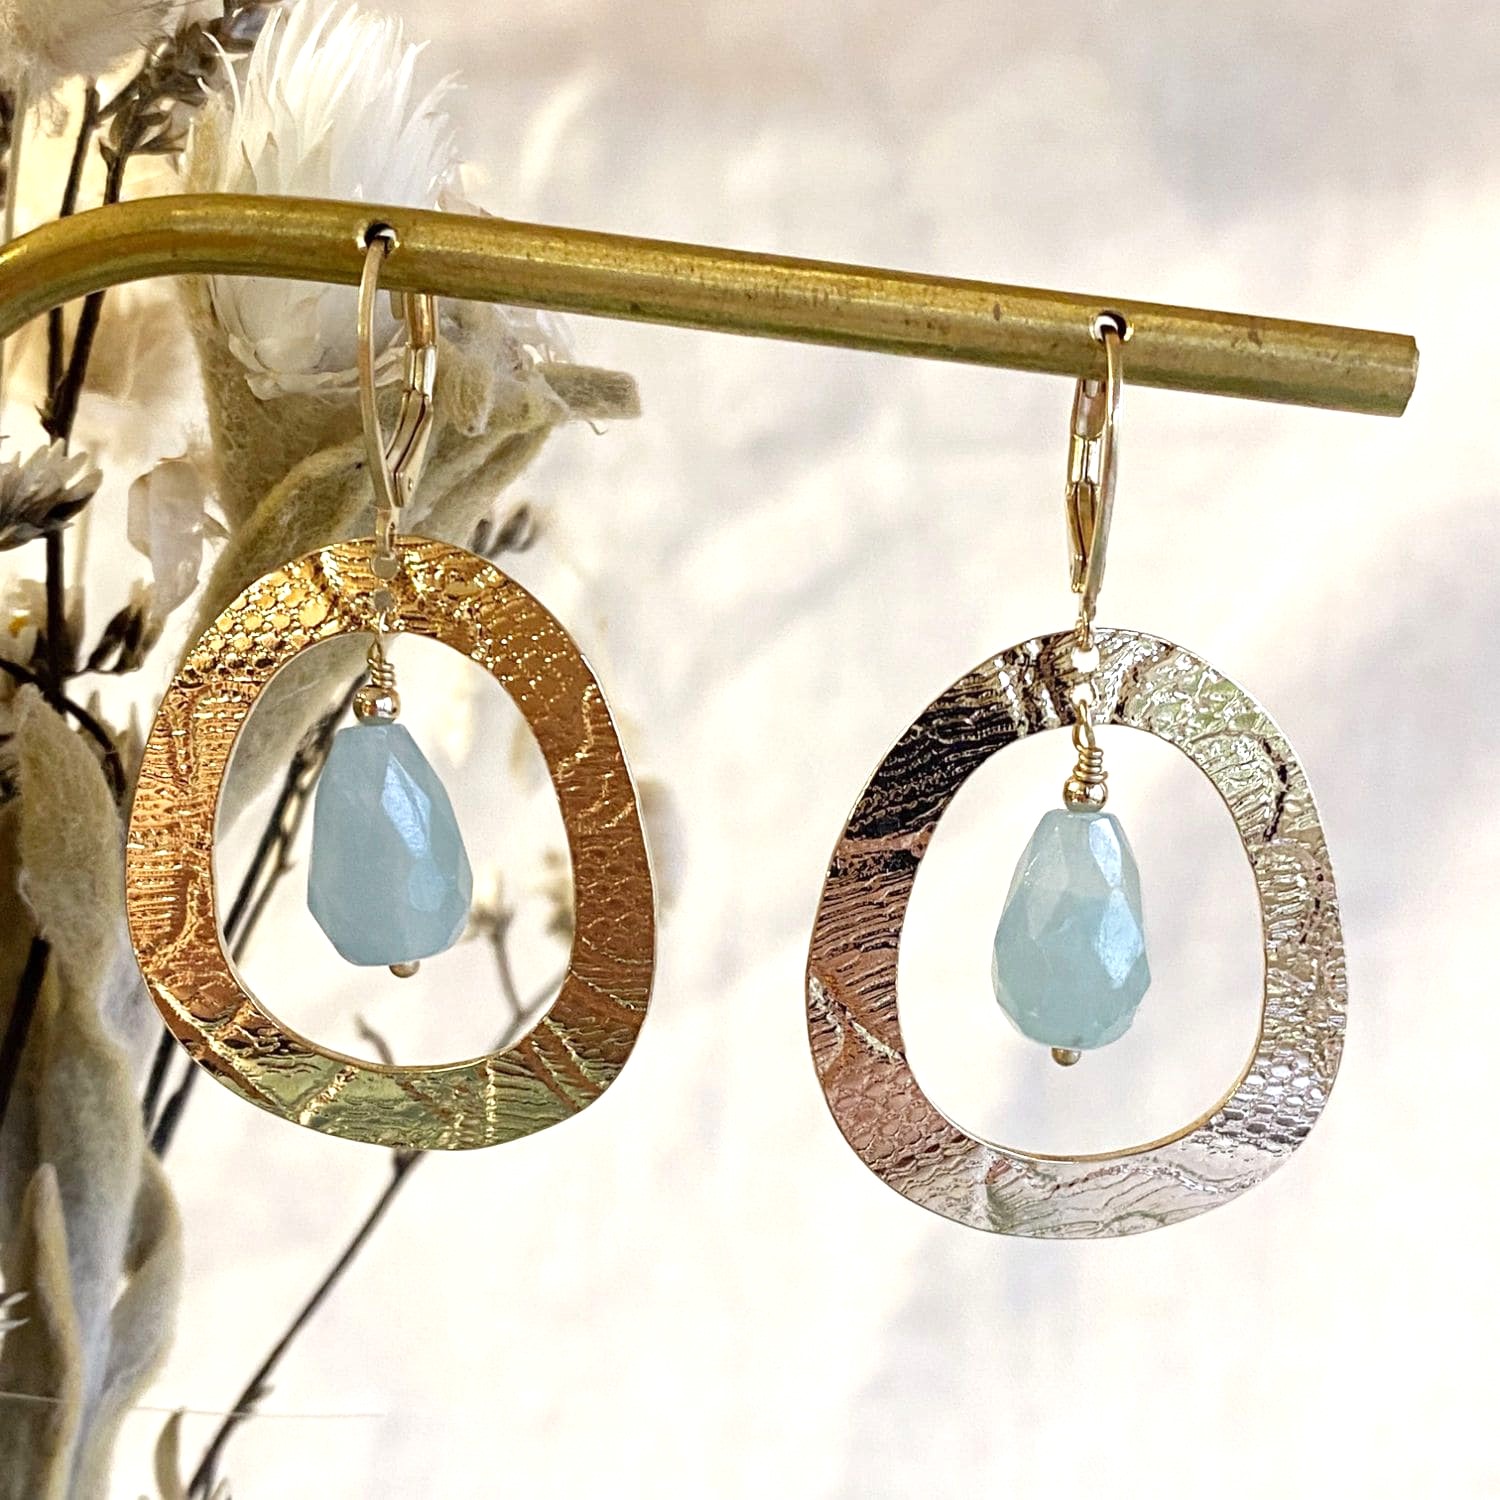 boucles d oreilles pendantes anneau dentelle pierre fine bleu vert idee cadeau original pour femme bijou de createur leonie et france eshop d artisans createurs francais